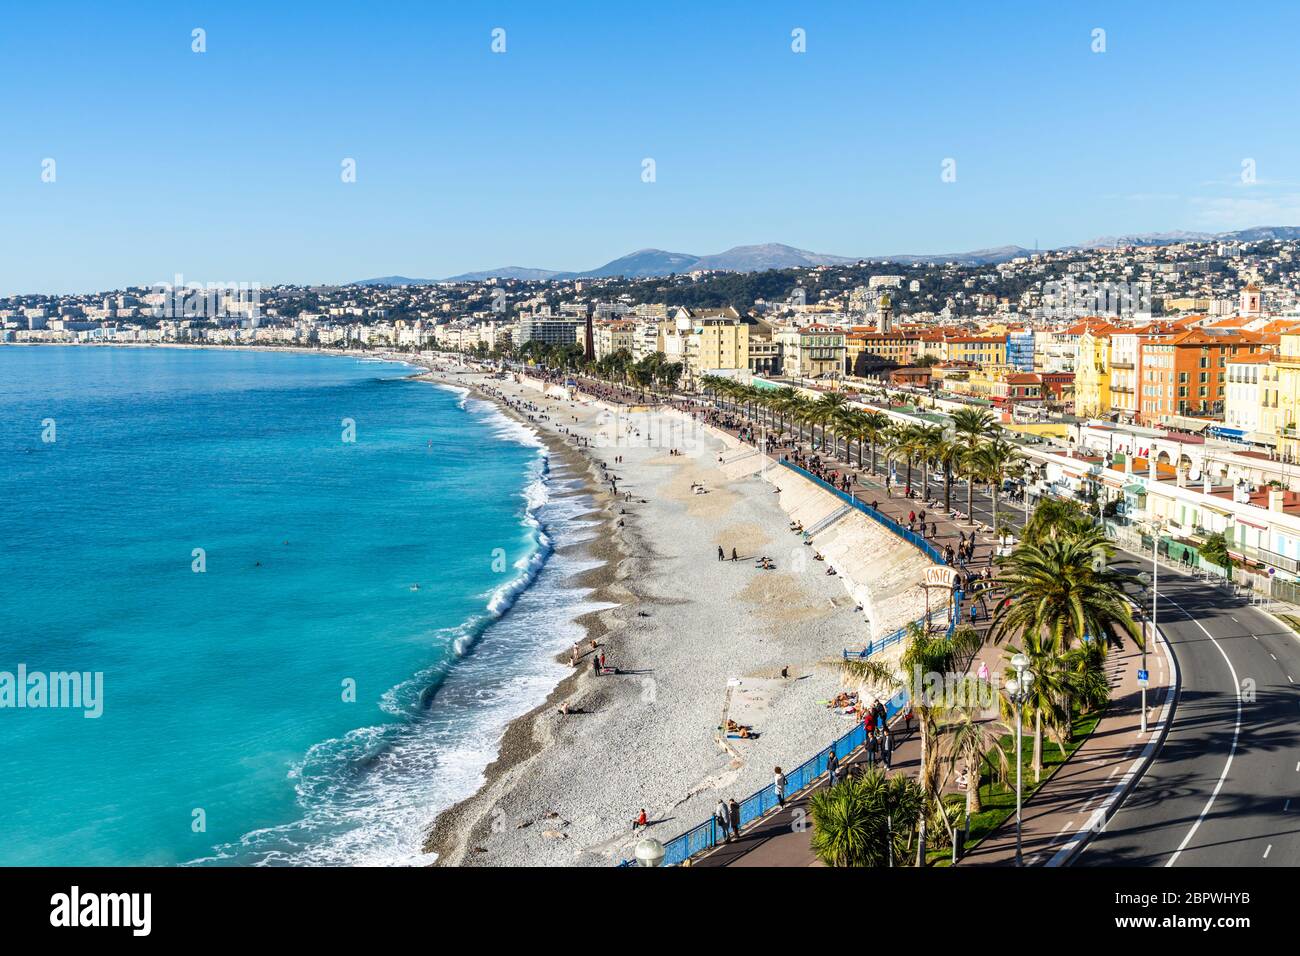 Vue panoramique sur la célèbre Promenade des Anglais, la plus célèbre attraction touristique de Nice, France Banque D'Images